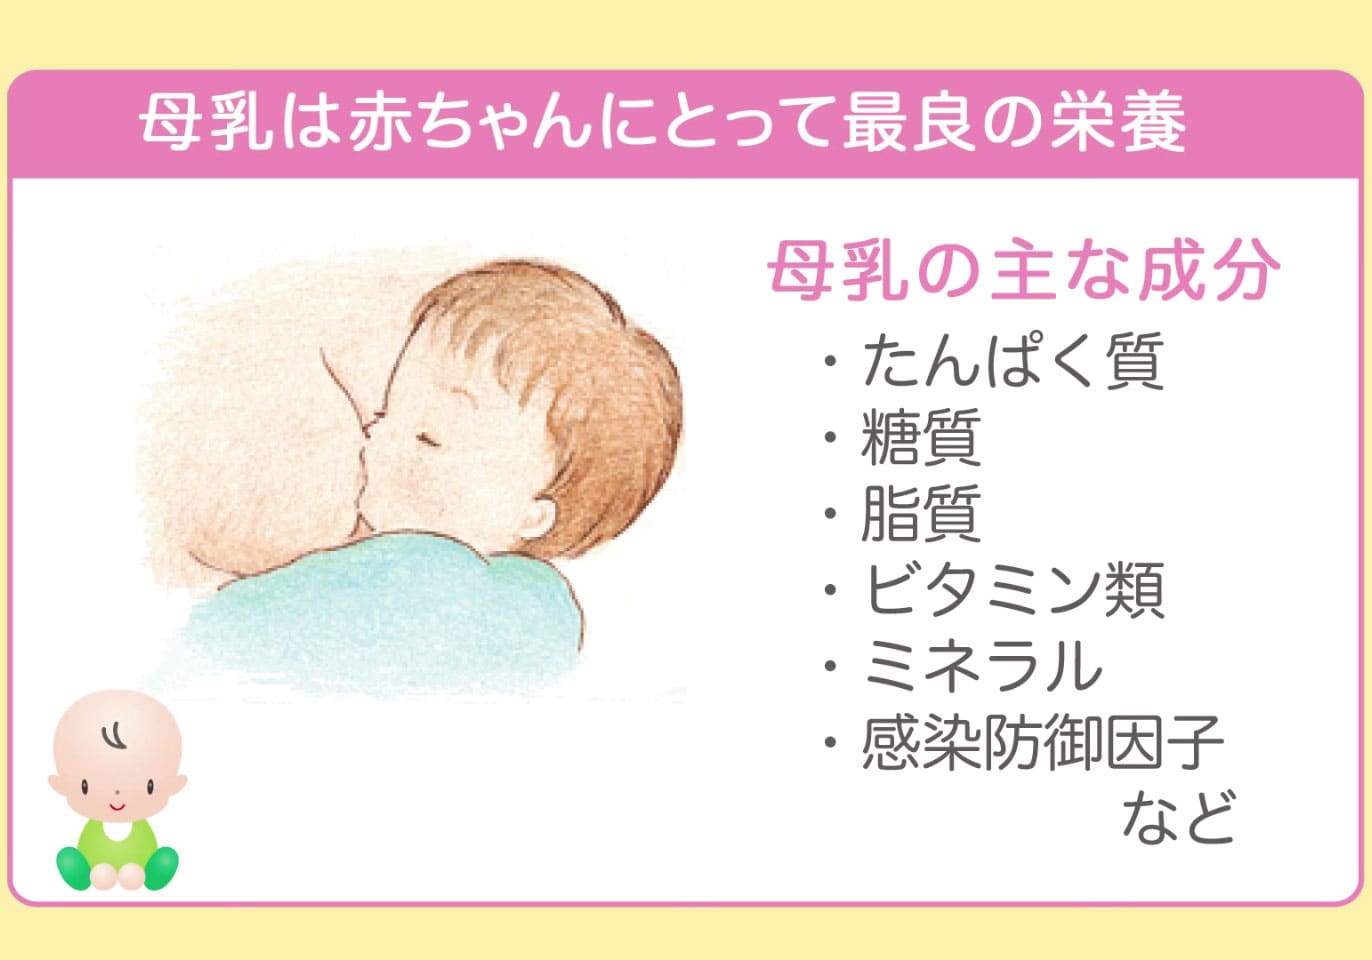 なぜ 母乳がいちばんなの 学ぶ動画で学ぼう 明治 赤ちゃん情報室 ほほえみクラブ 育児応援サイト